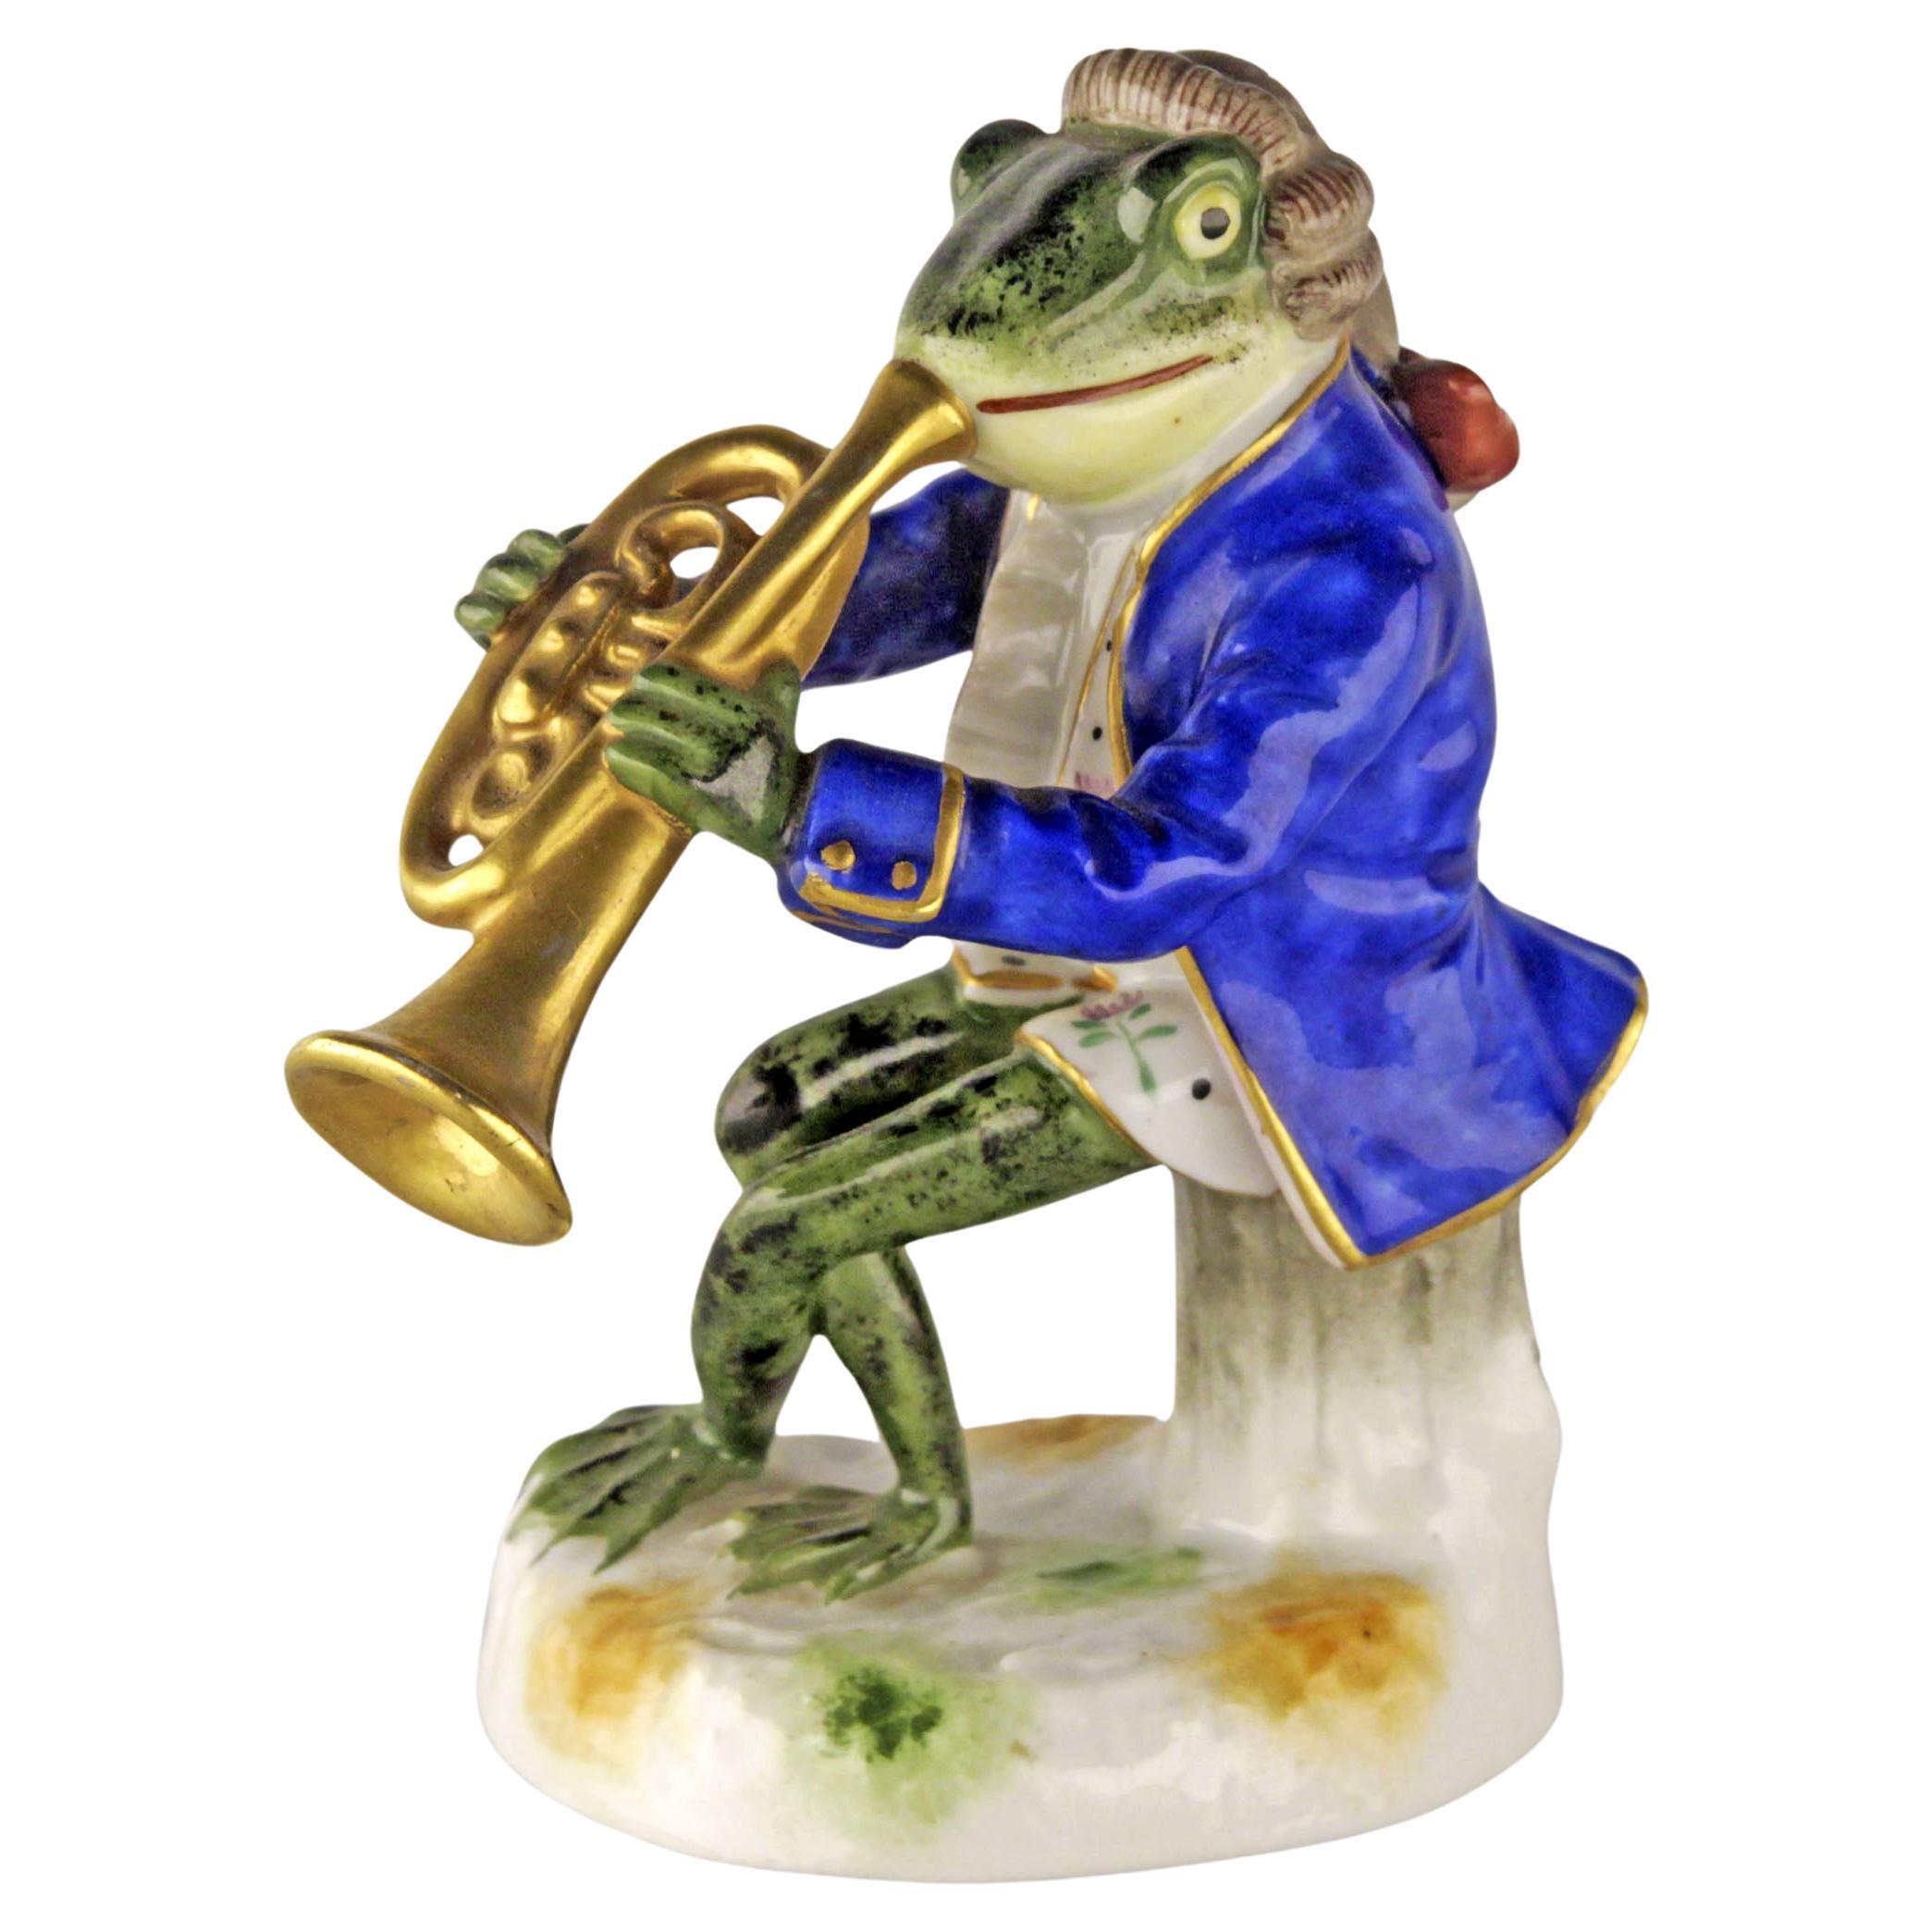 Jugendstil German Porcelain Figurine of a Brass Playing Frog by Goebel Company For Sale